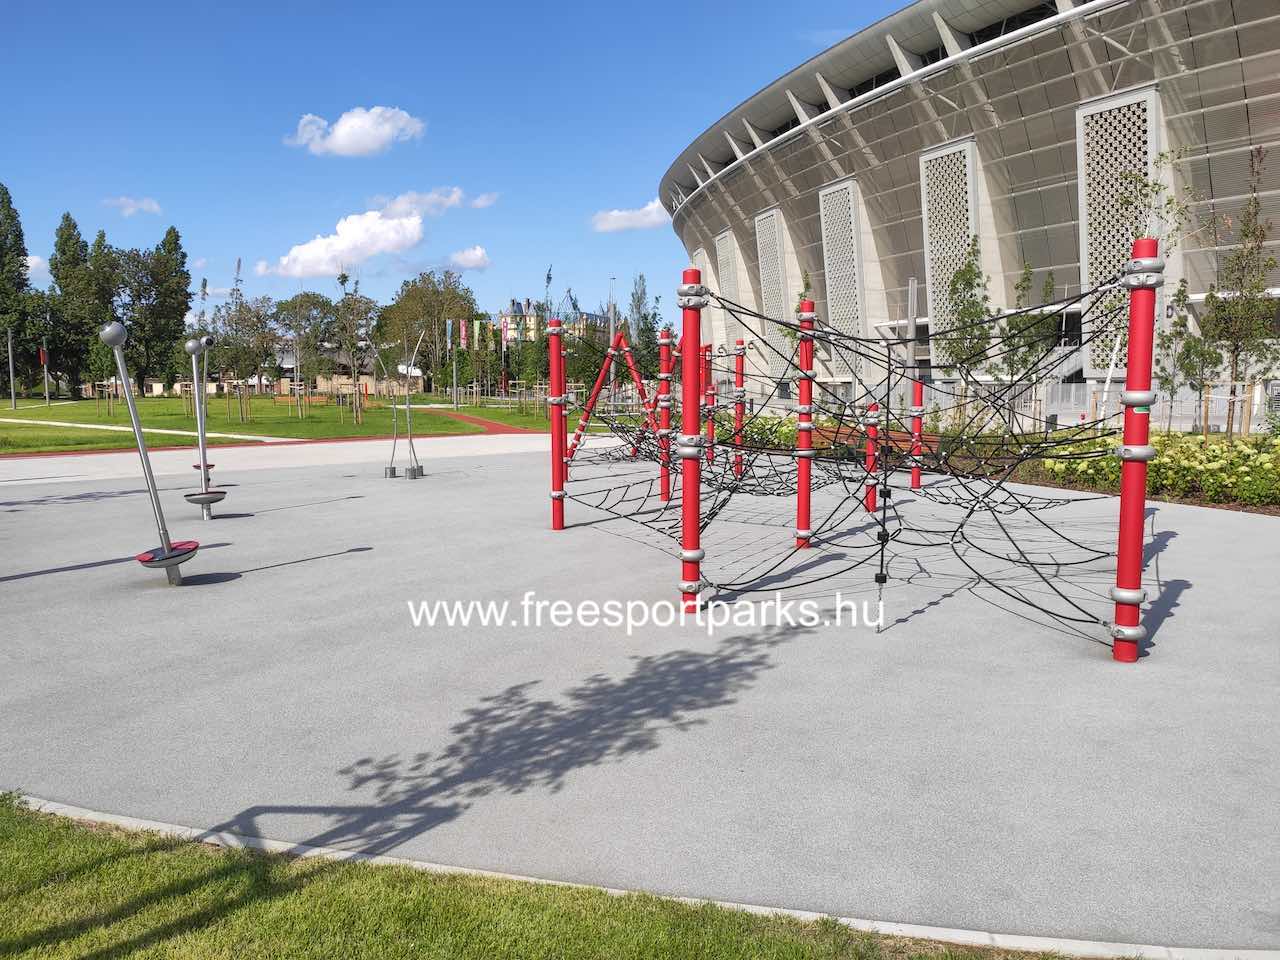 akadálypálya játszótér a Puskás Aréna Park nyugati oldalán - Free Sport Parks térkép